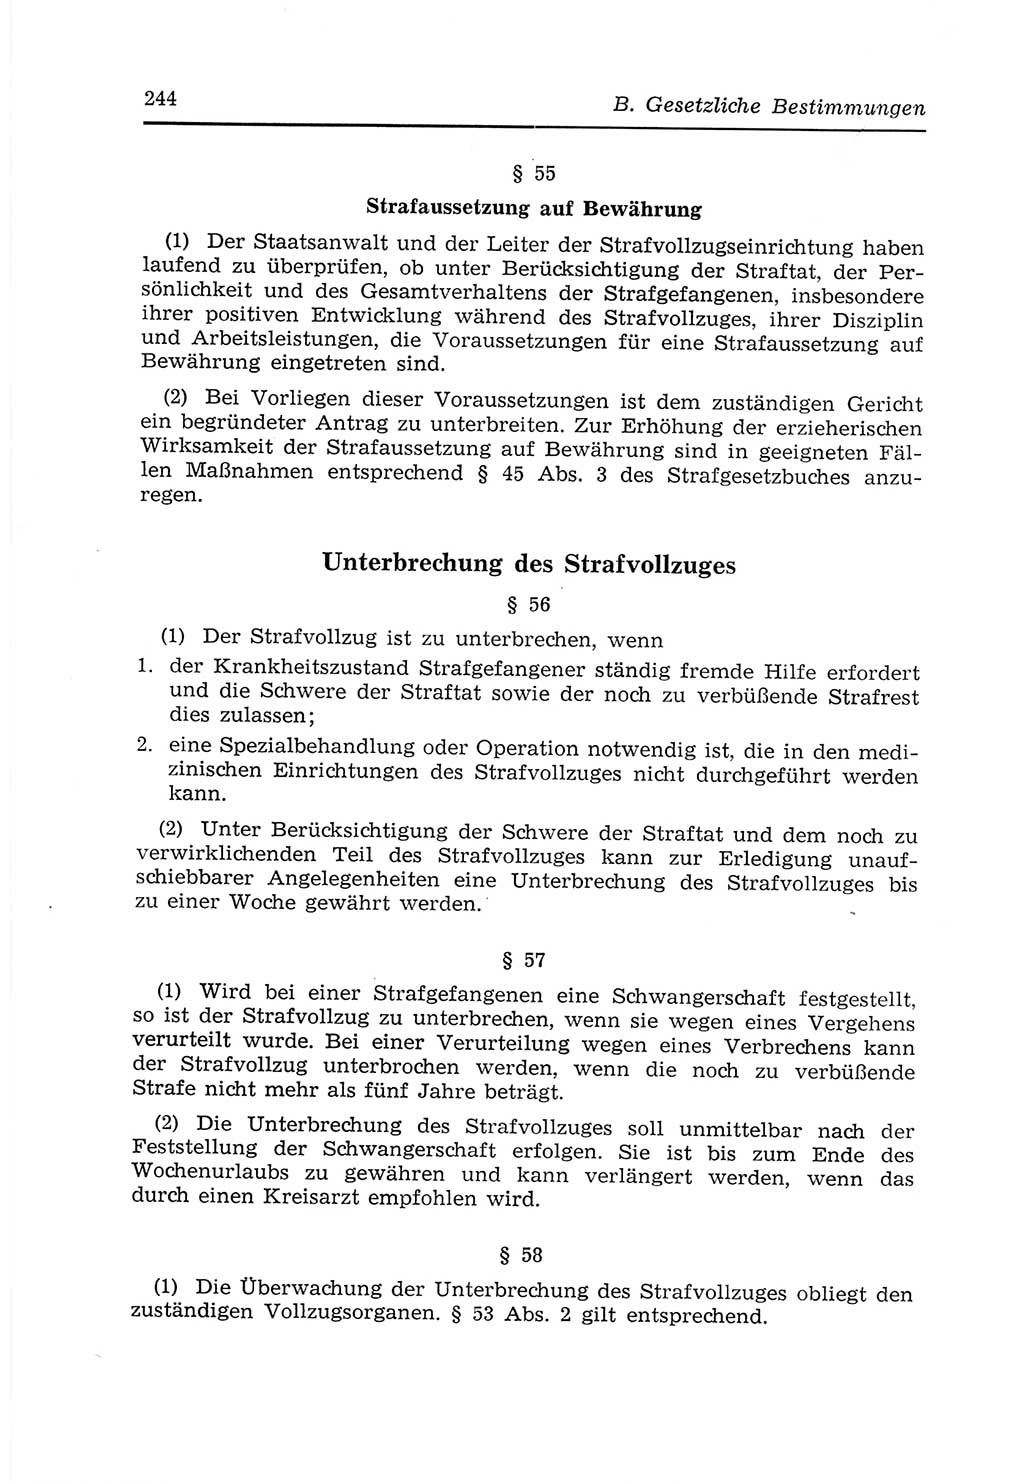 Strafvollzugs- und Wiedereingliederungsgesetz (SVWG) der Deutschen Demokratischen Republik (DDR) 1968, Seite 244 (SVWG DDR 1968, S. 244)